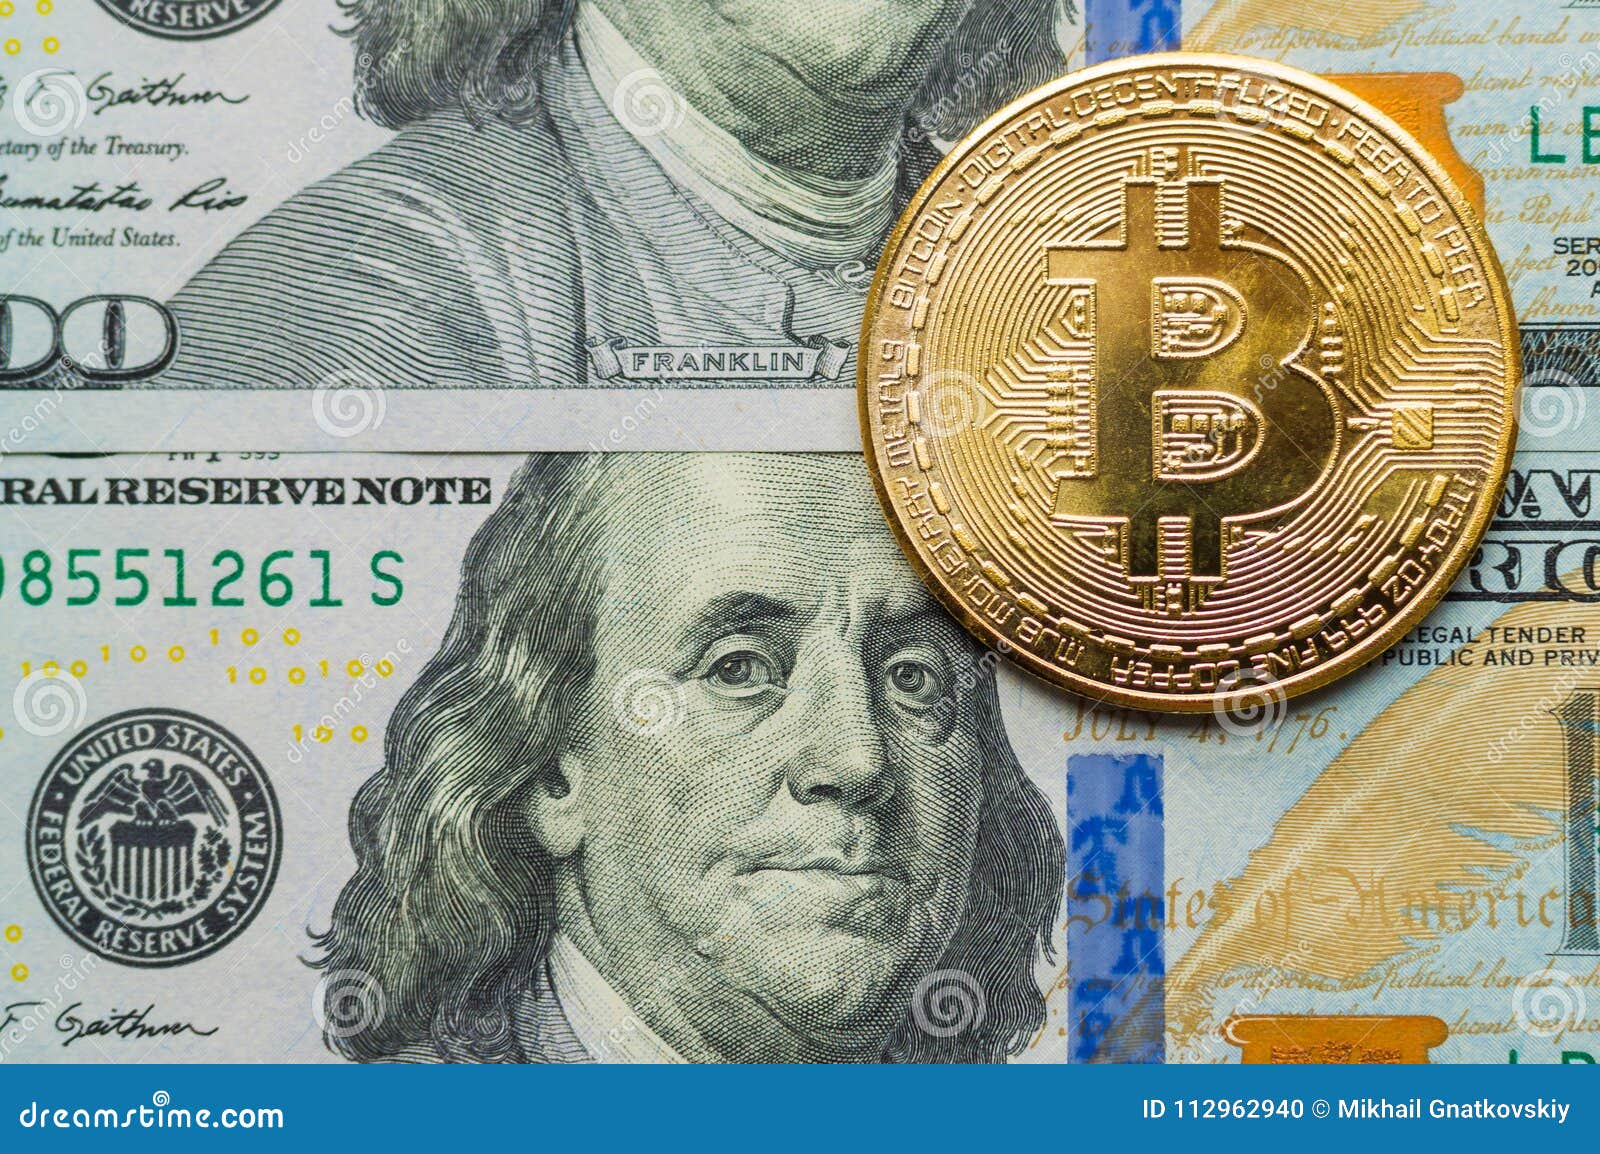 bitcoins exchange rate uk to us dollar